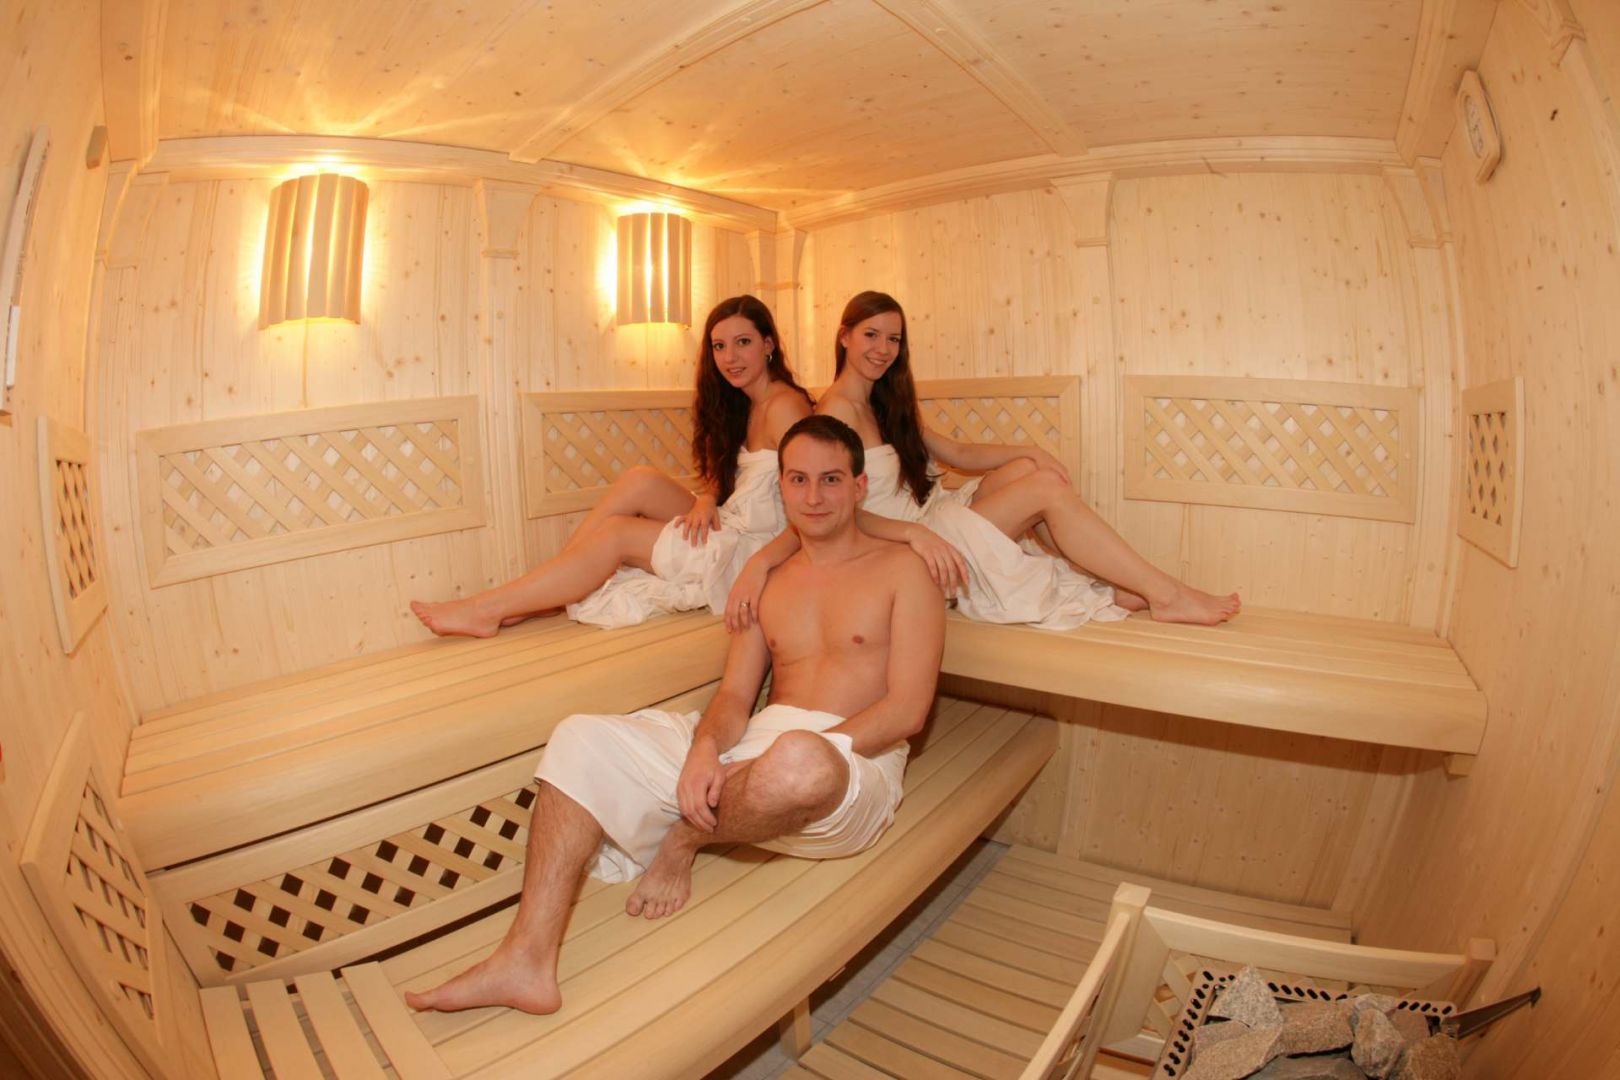 Geil und nackt in der sauna